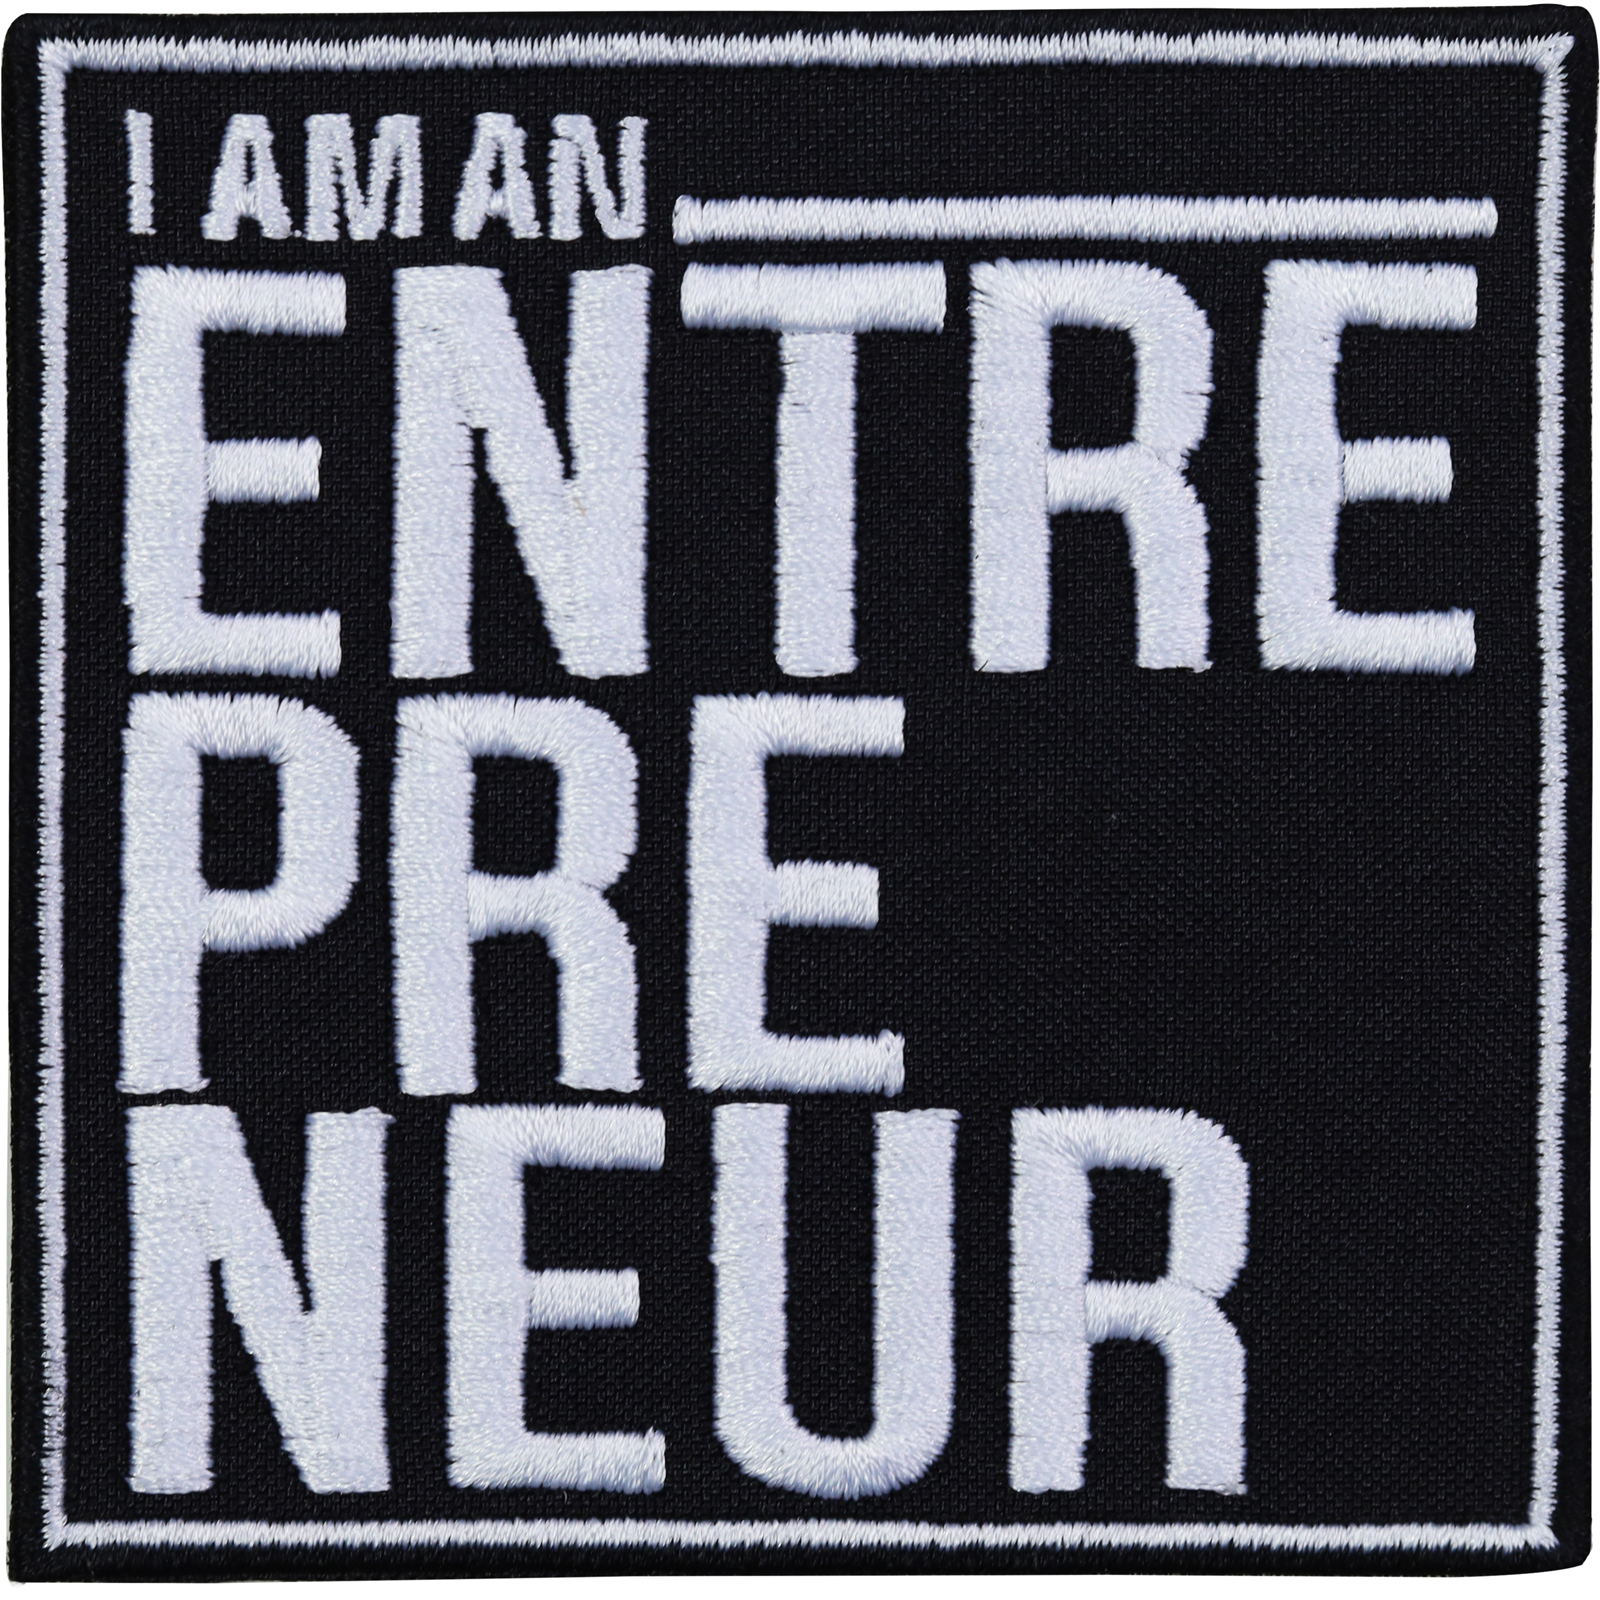 I am an Entrepreneur - Patch